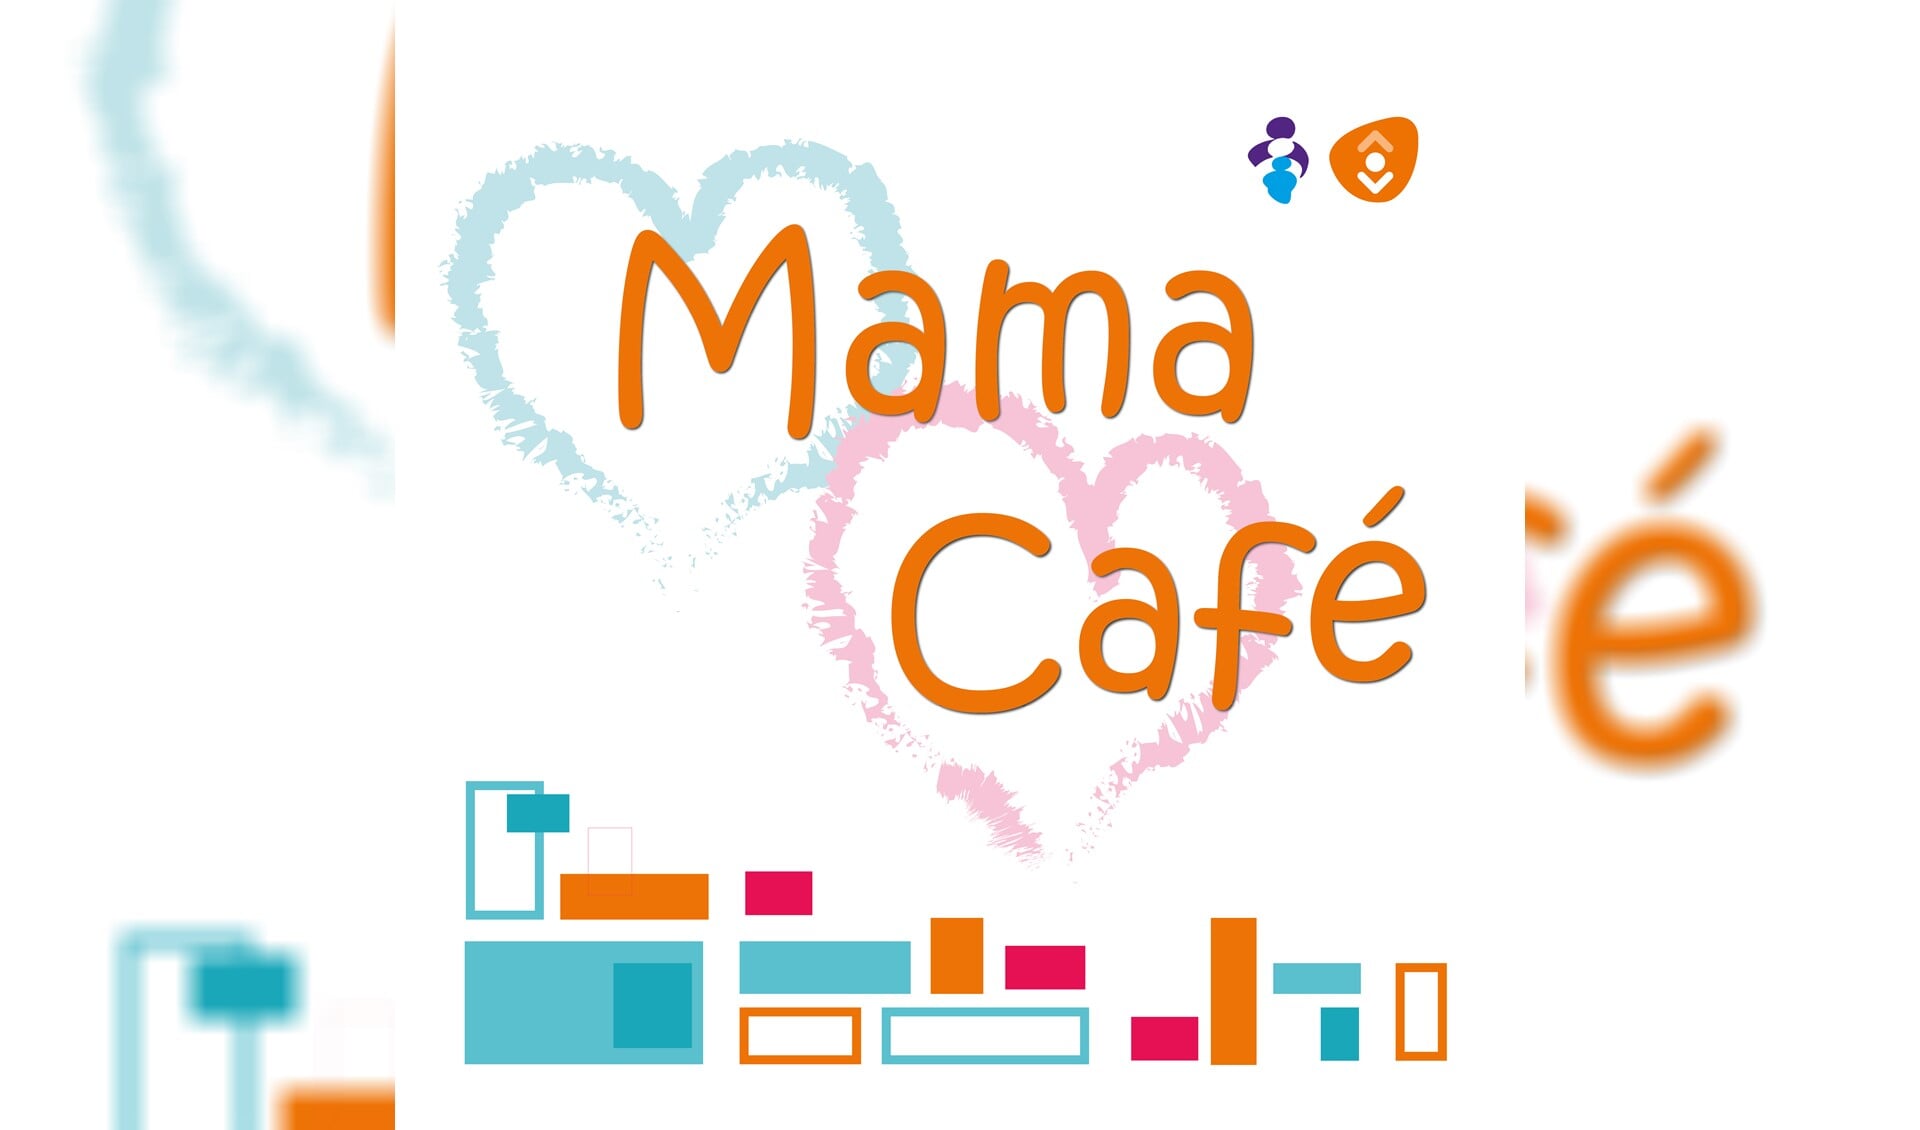 Je kunt gewoon naar binnen lopen en een kopje koffie of thee nemen in het mama café!